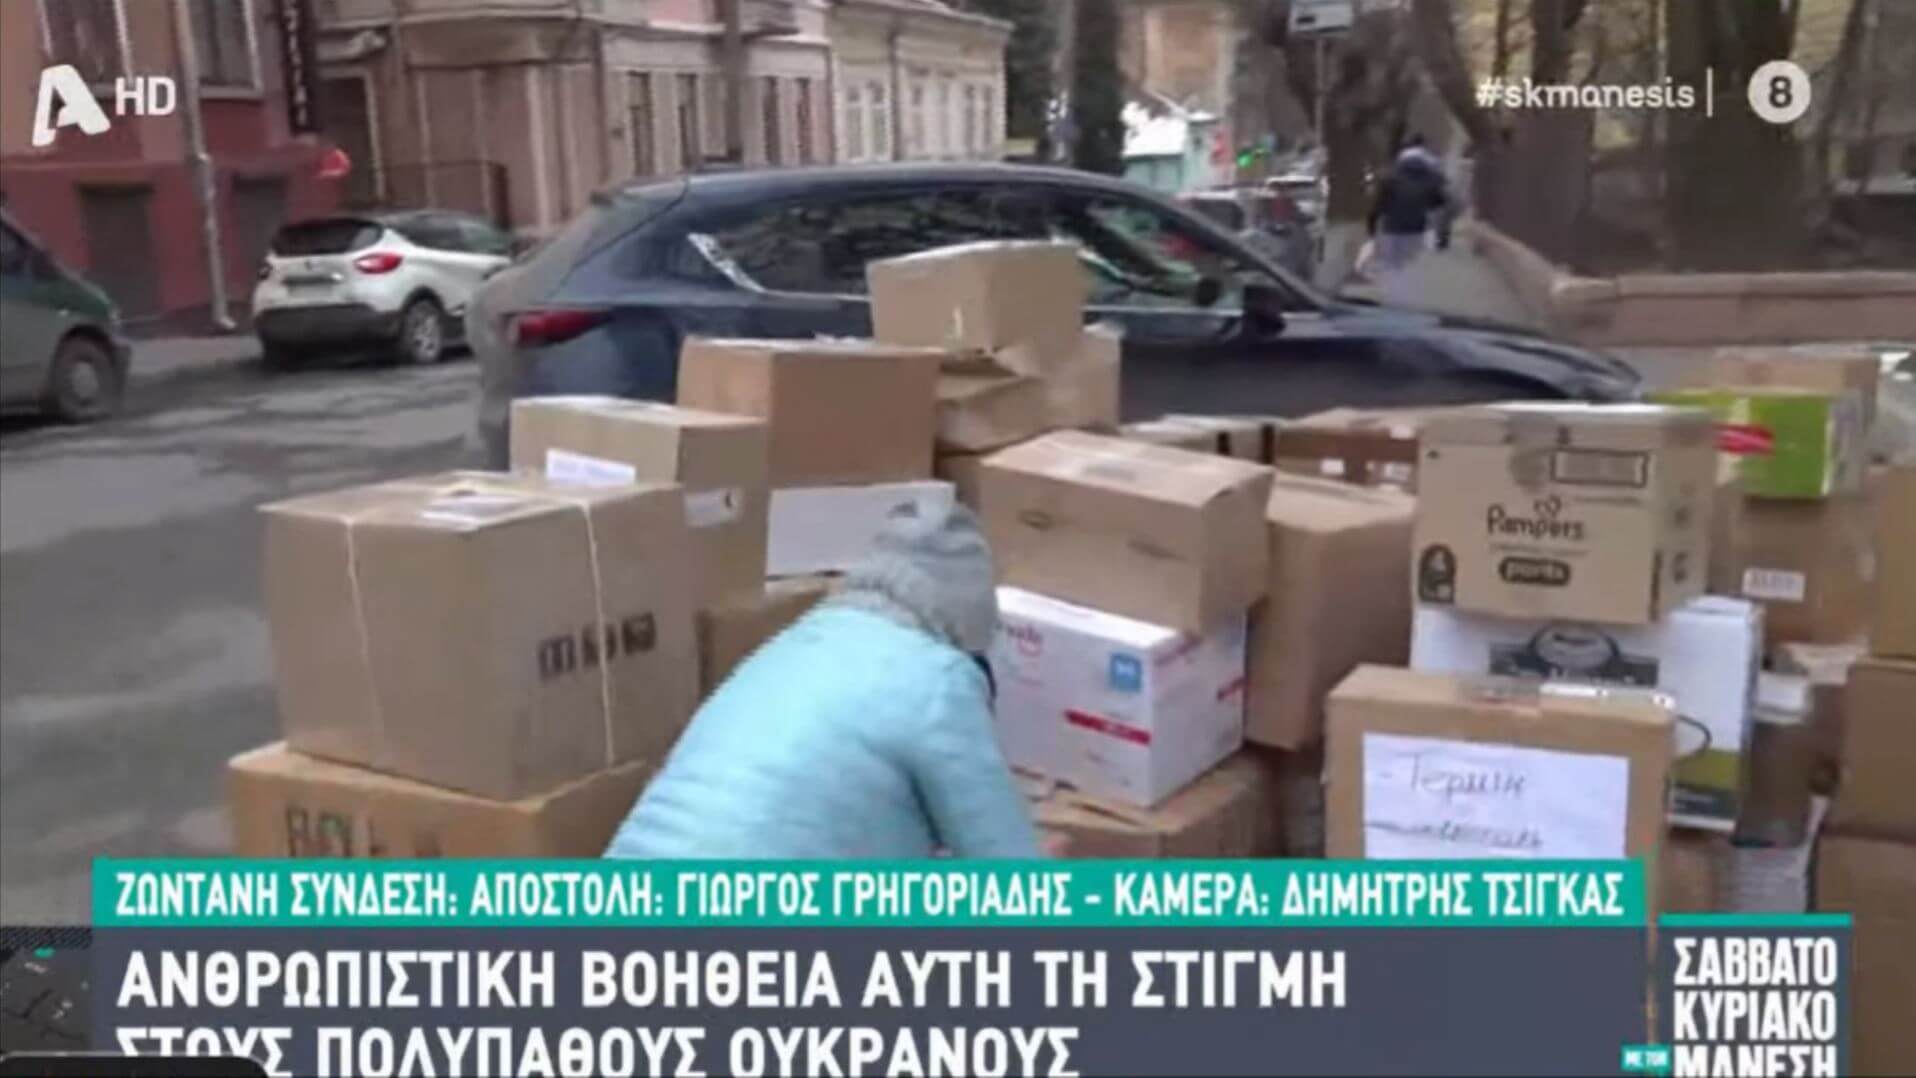 Ολοκληρώθηκε Η Αποστολή Ανθρωπιστικής Βοήθειας Στην Ουκρανία Από Τον Δήμο Ηλιούπολης (VIDEO)